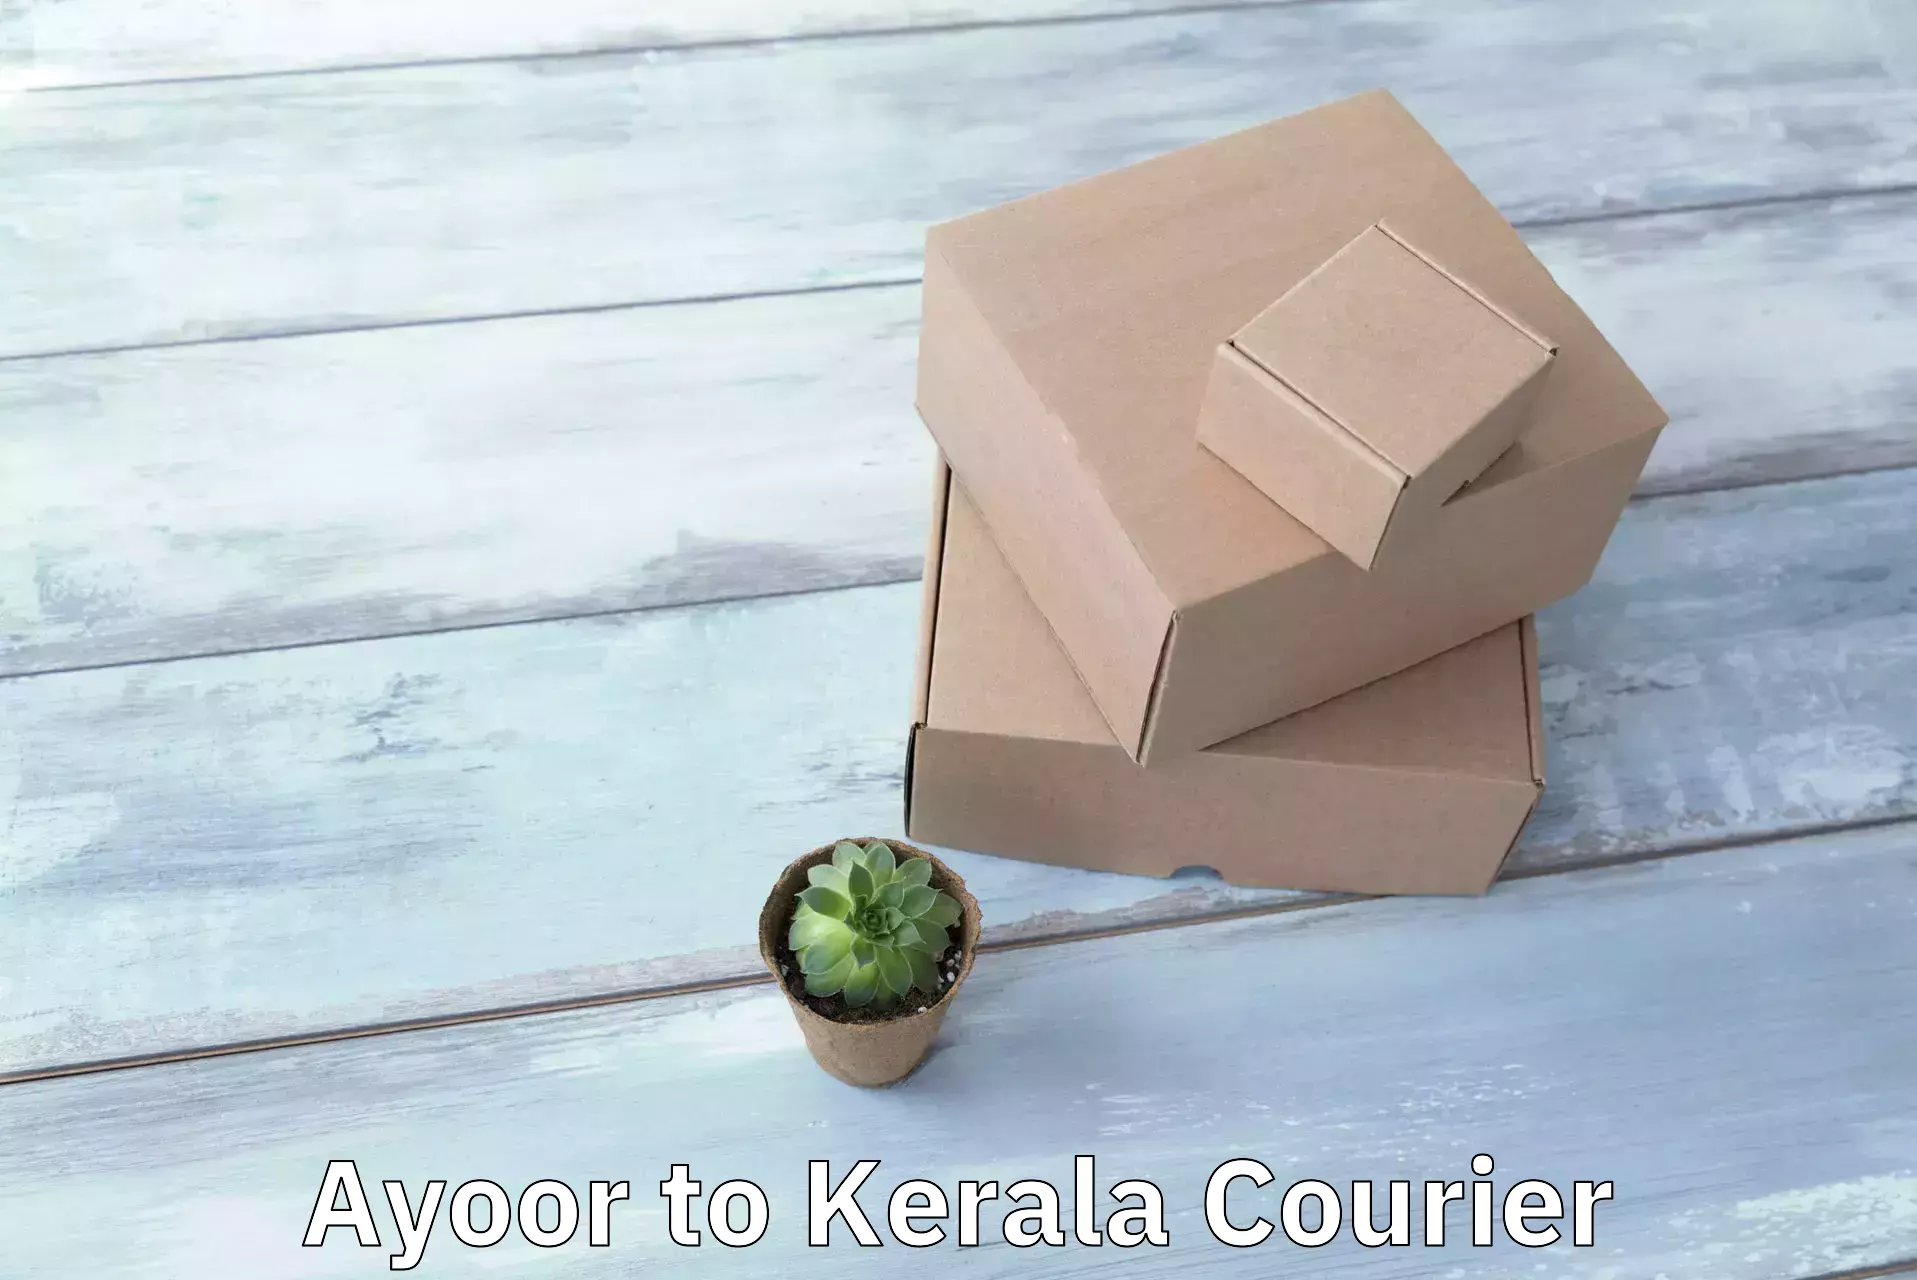 Courier app in Ayoor to Cochin Port Kochi